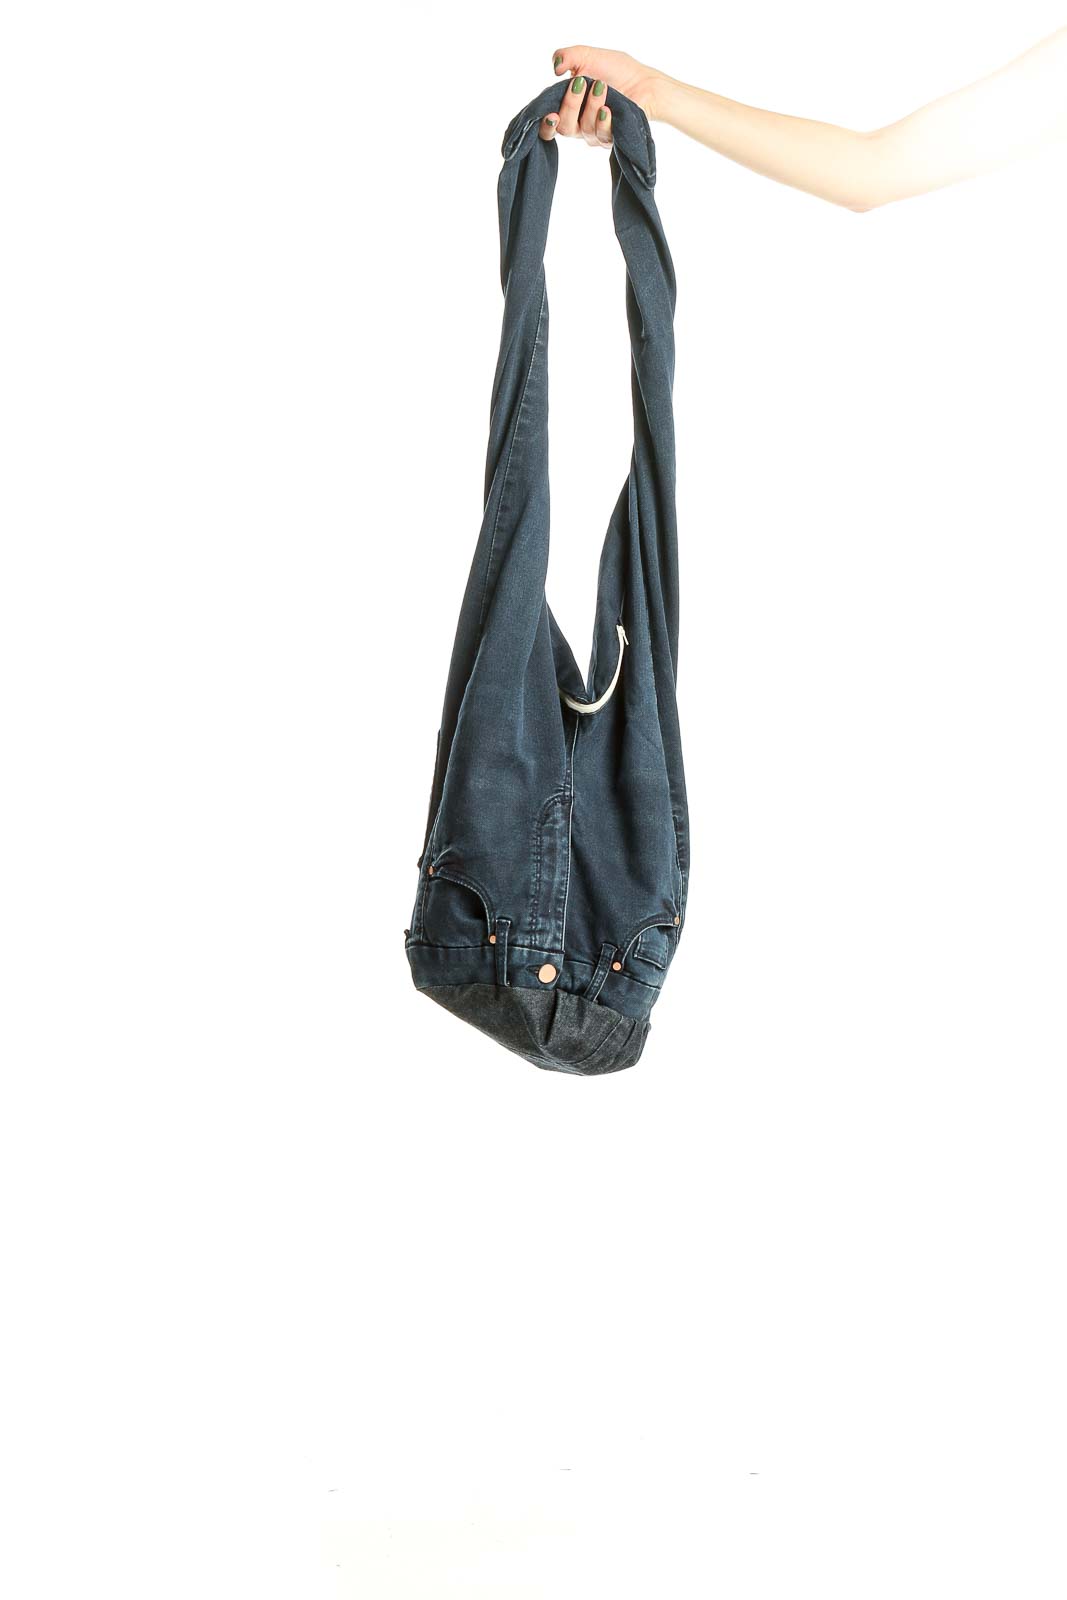 SilkRoll Blue Shoulder Bag